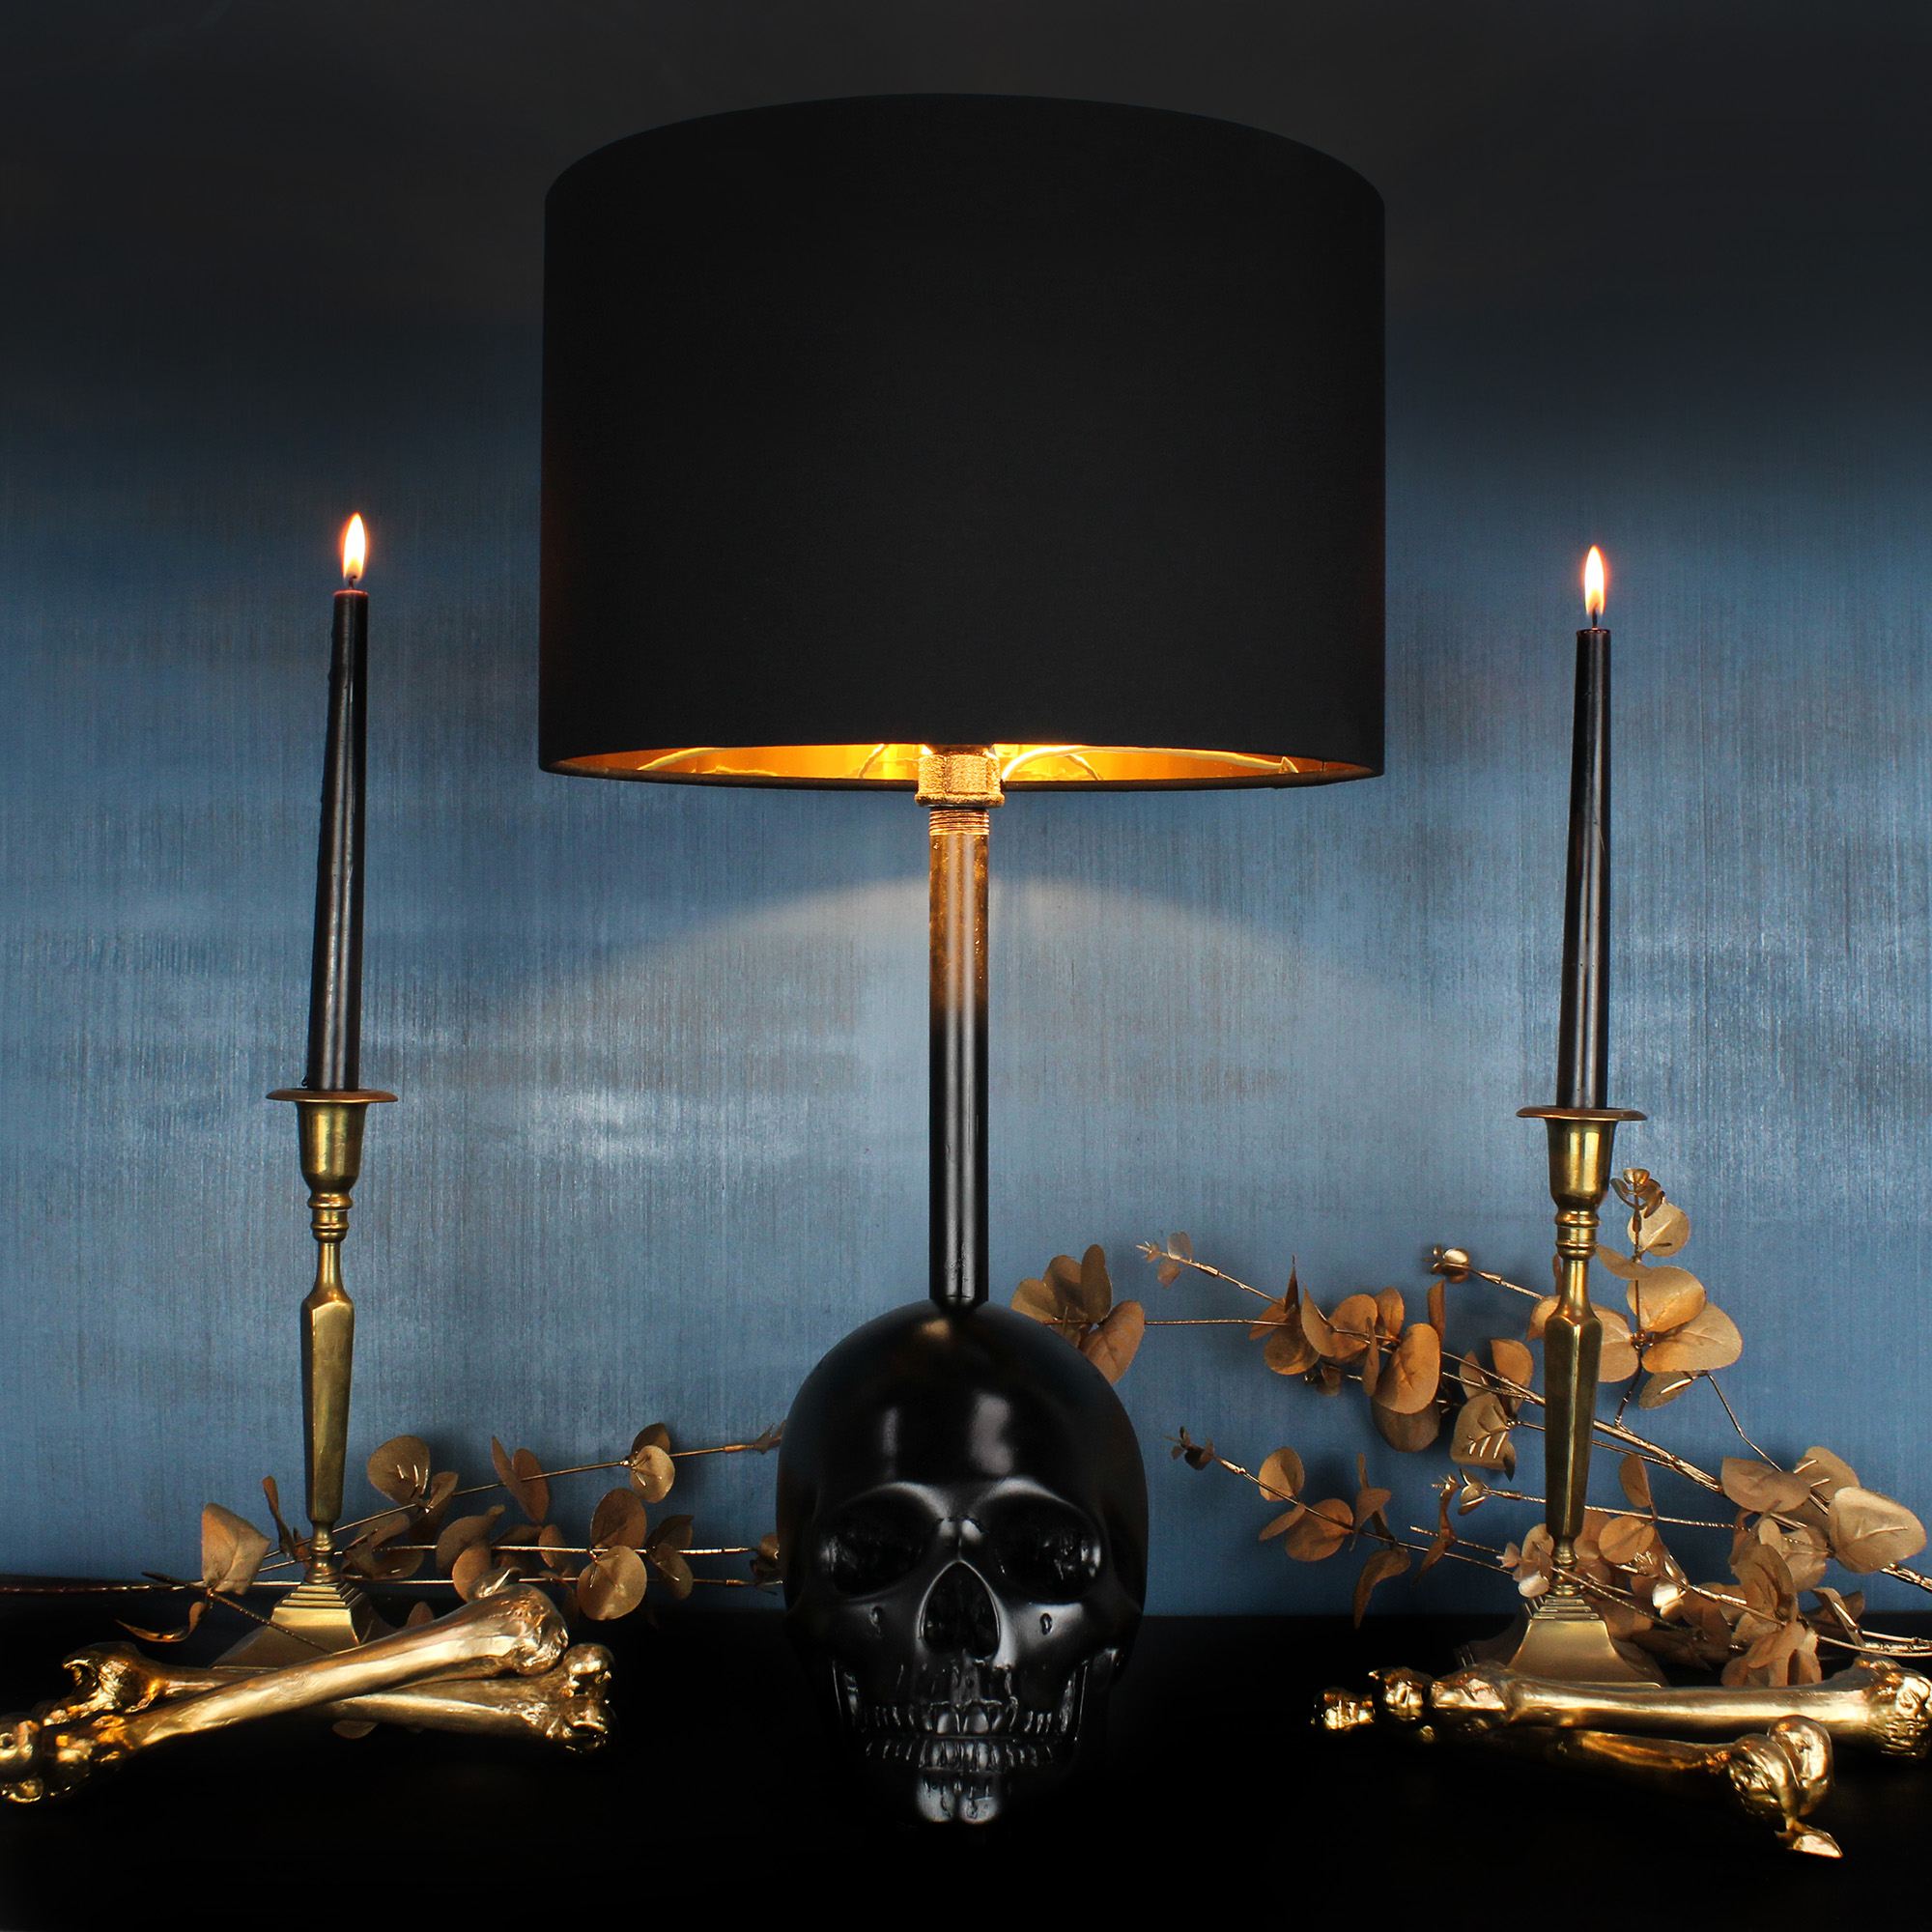 The Edison Skull Lamp